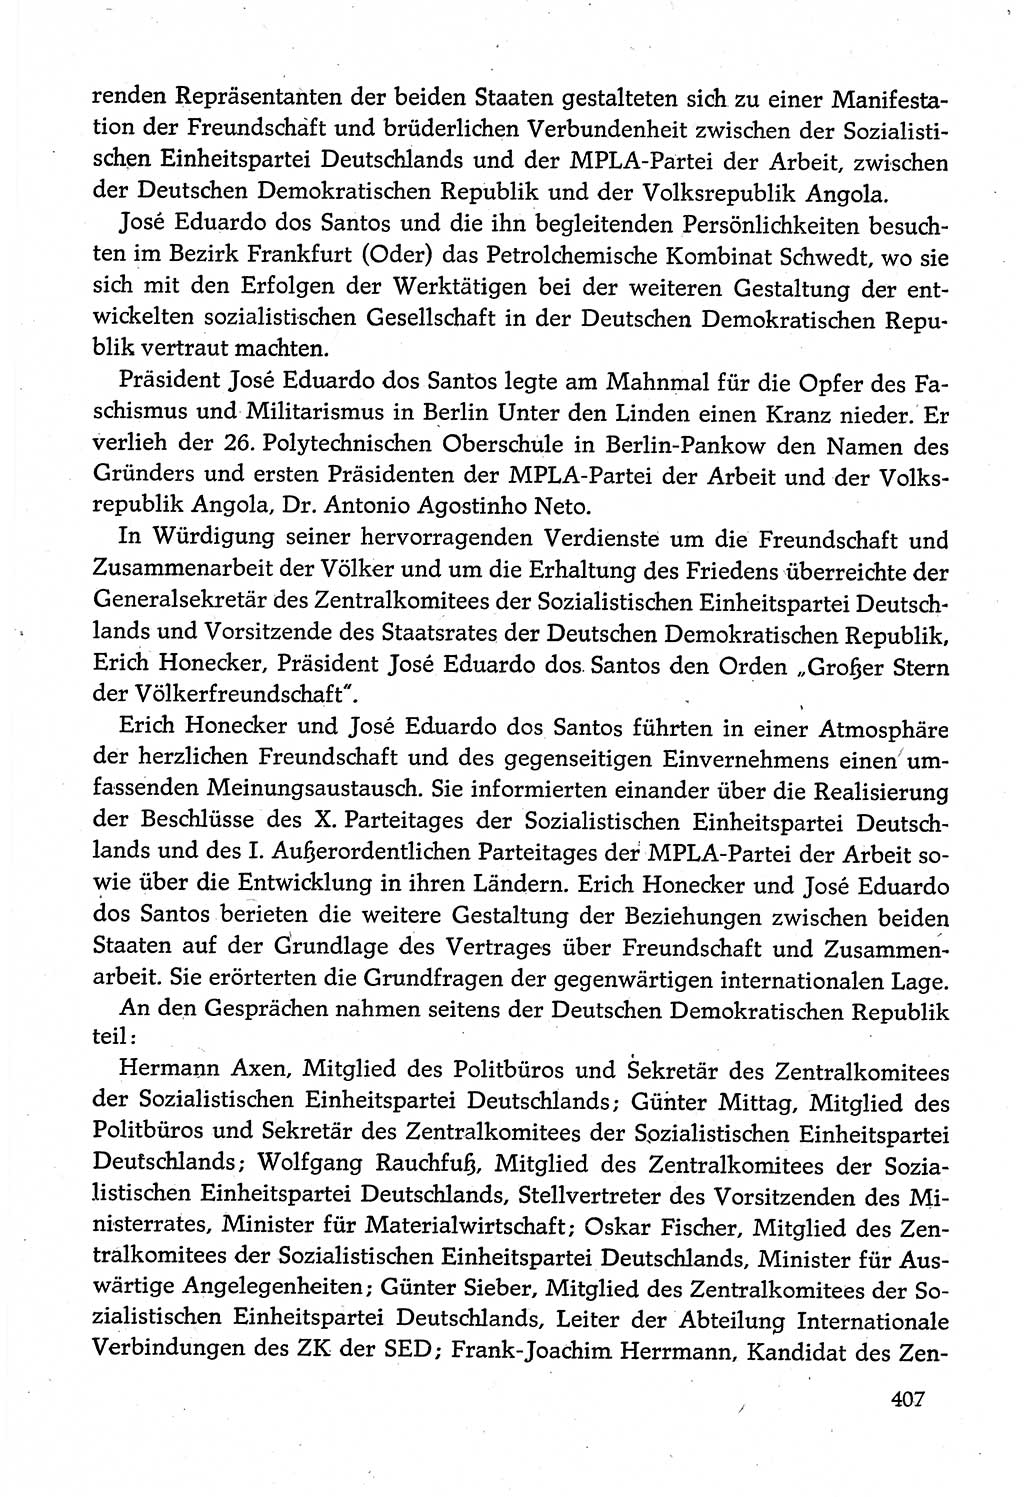 Dokumente der Sozialistischen Einheitspartei Deutschlands (SED) [Deutsche Demokratische Republik (DDR)] 1980-1981, Seite 407 (Dok. SED DDR 1980-1981, S. 407)